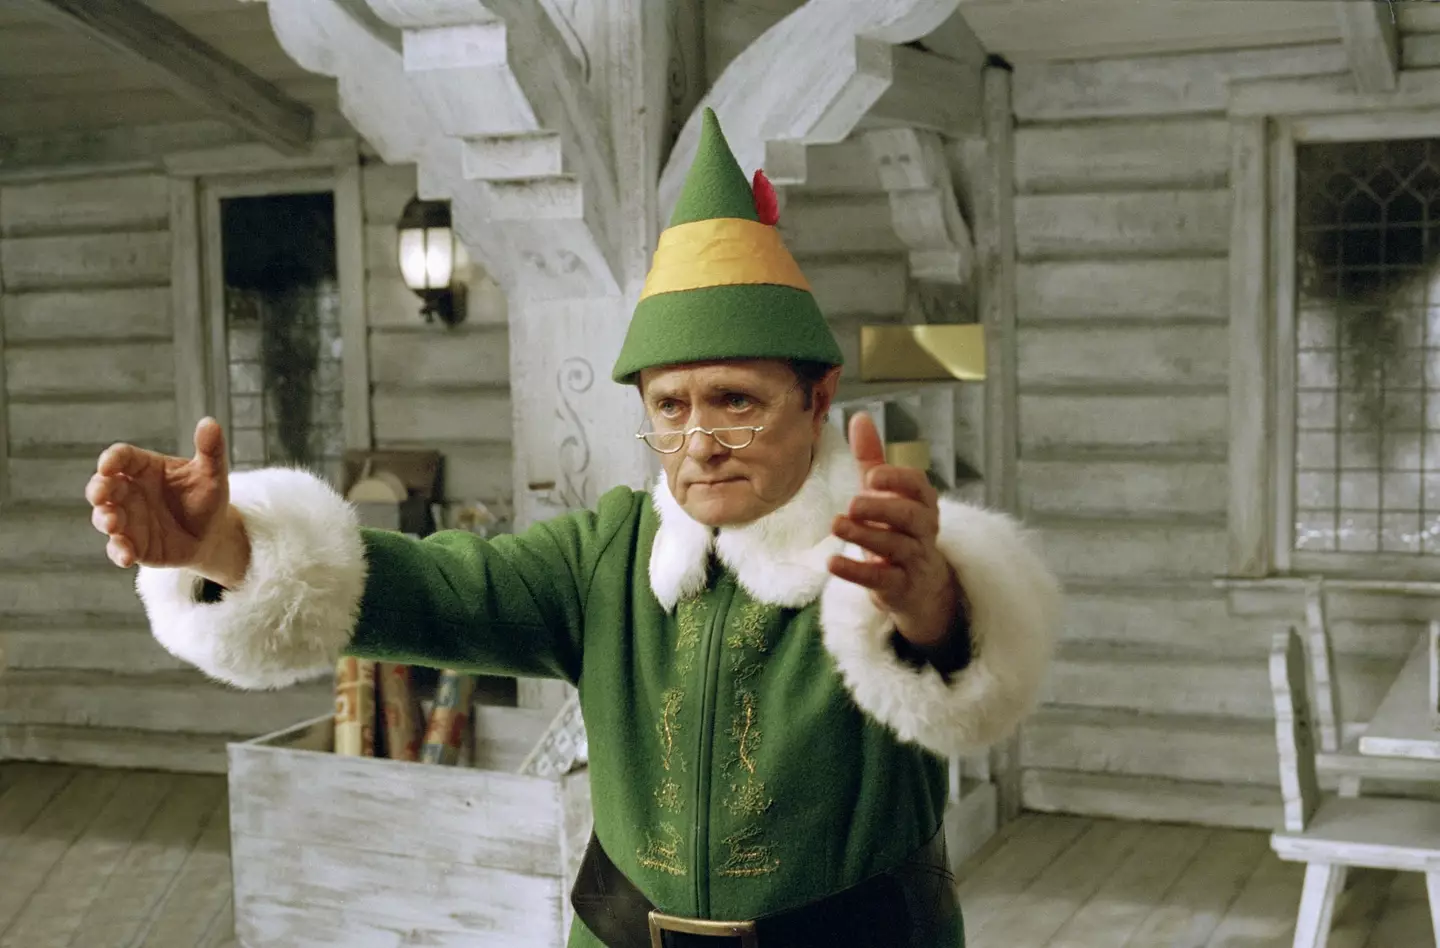 Papa Elf in the original 2003 Elf movie.